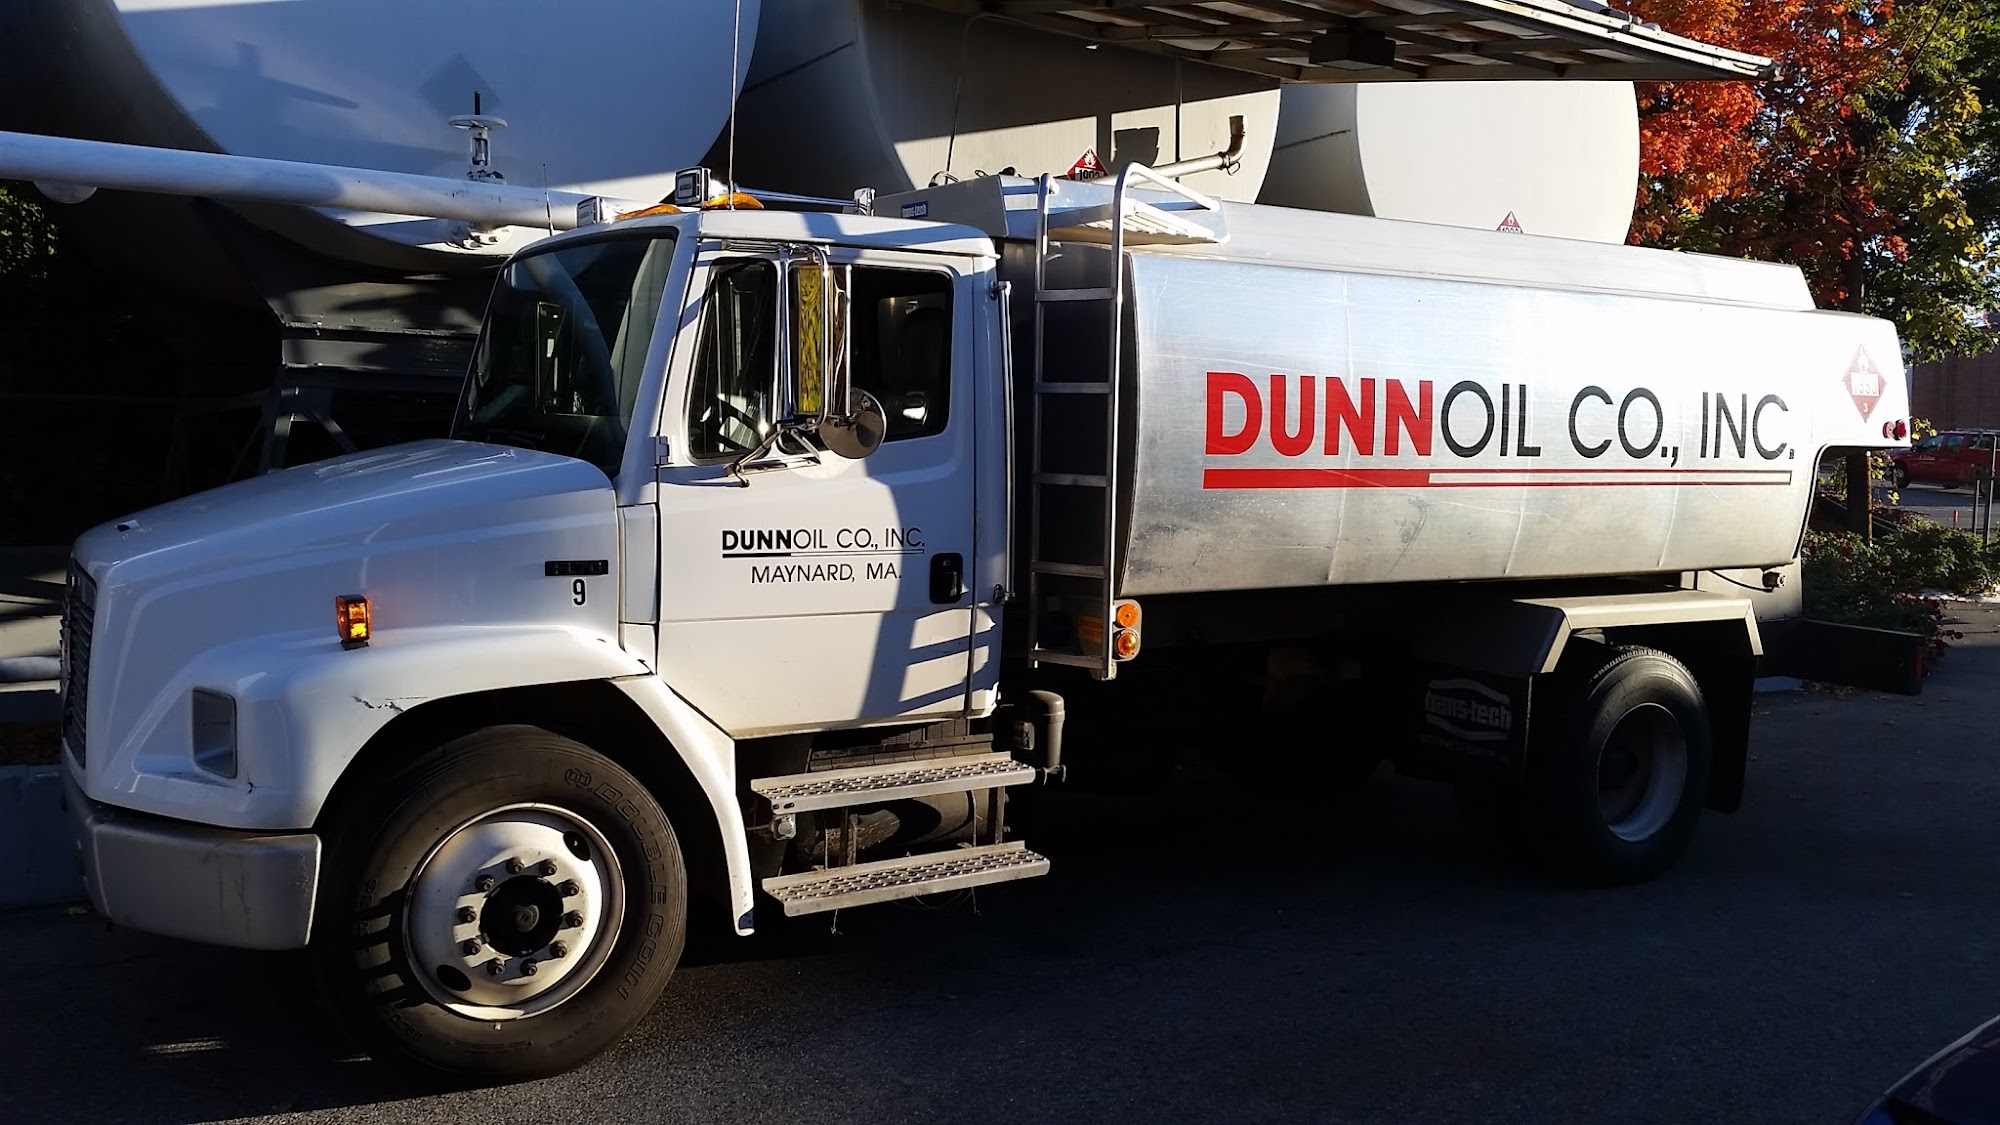 Dunn Oil Company